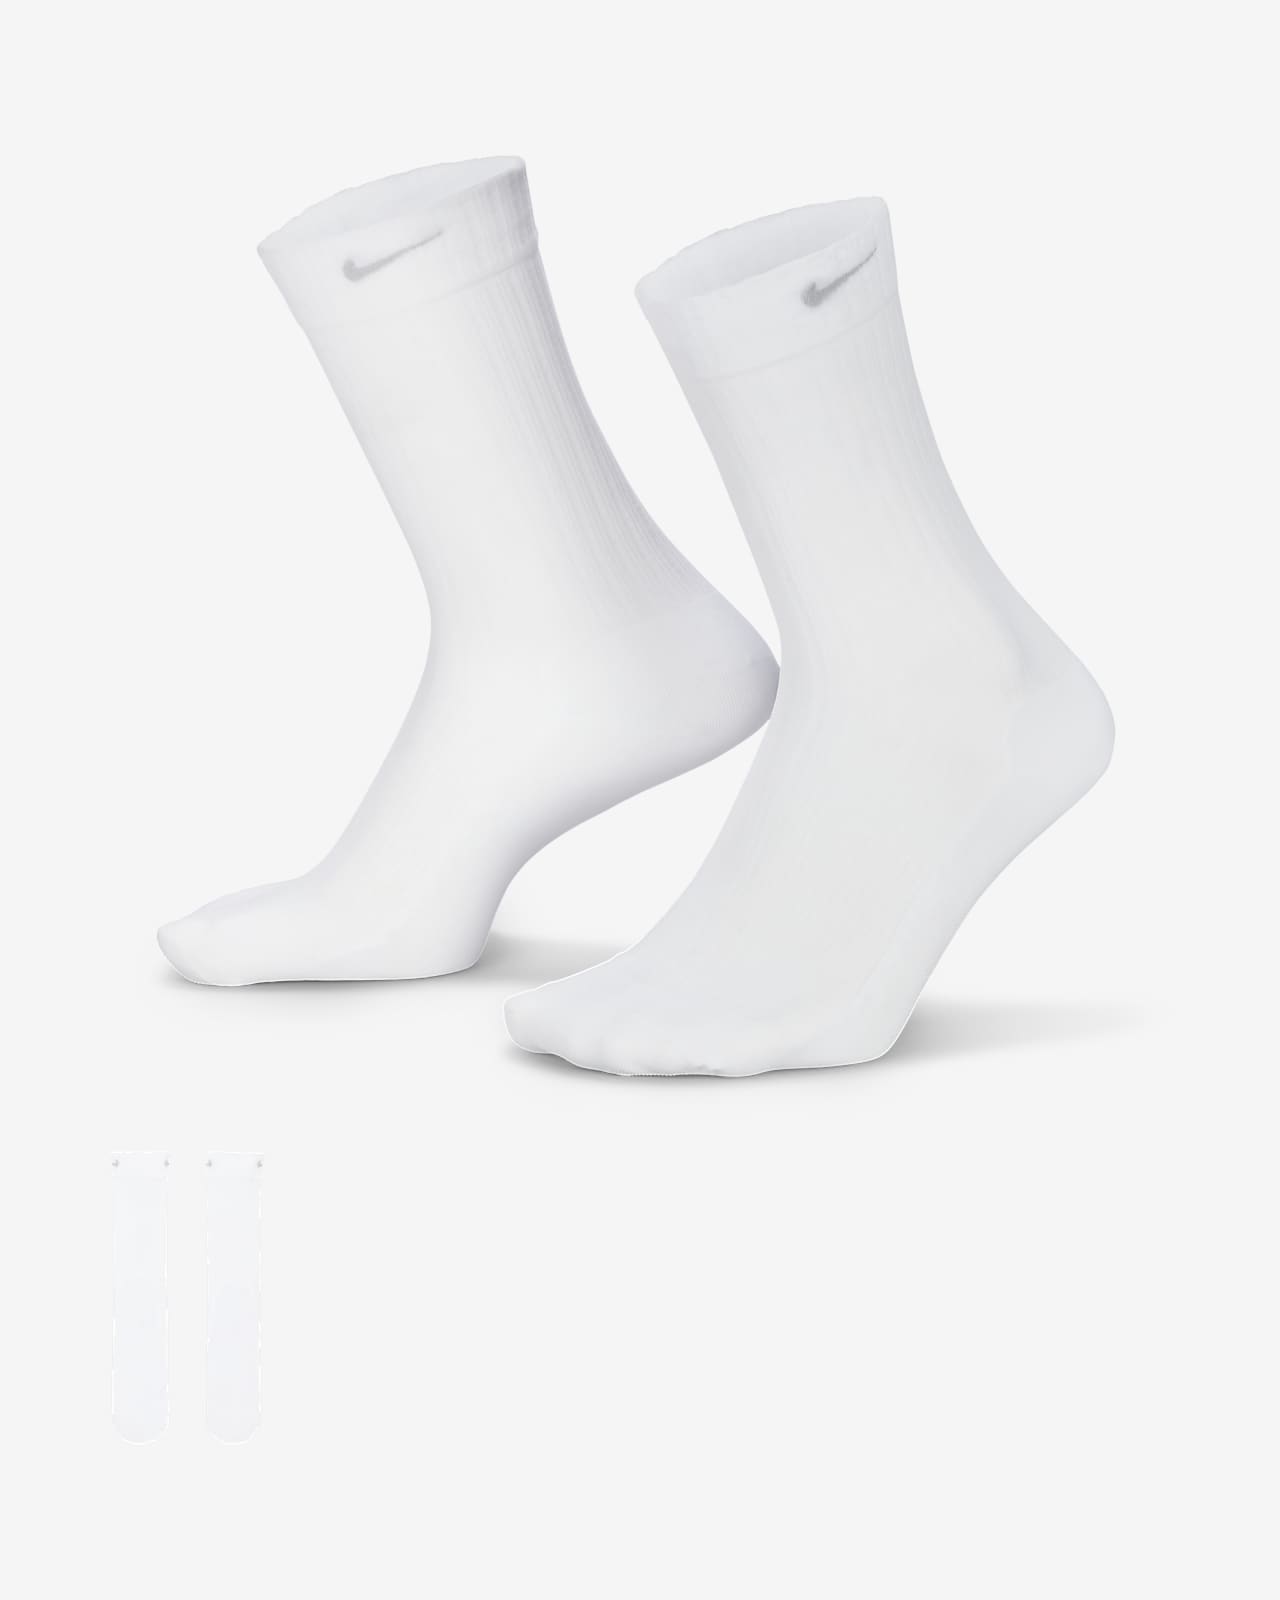 Chaussettes mi-mollet transparentes Nike pour femme (1 paire). Nike FR